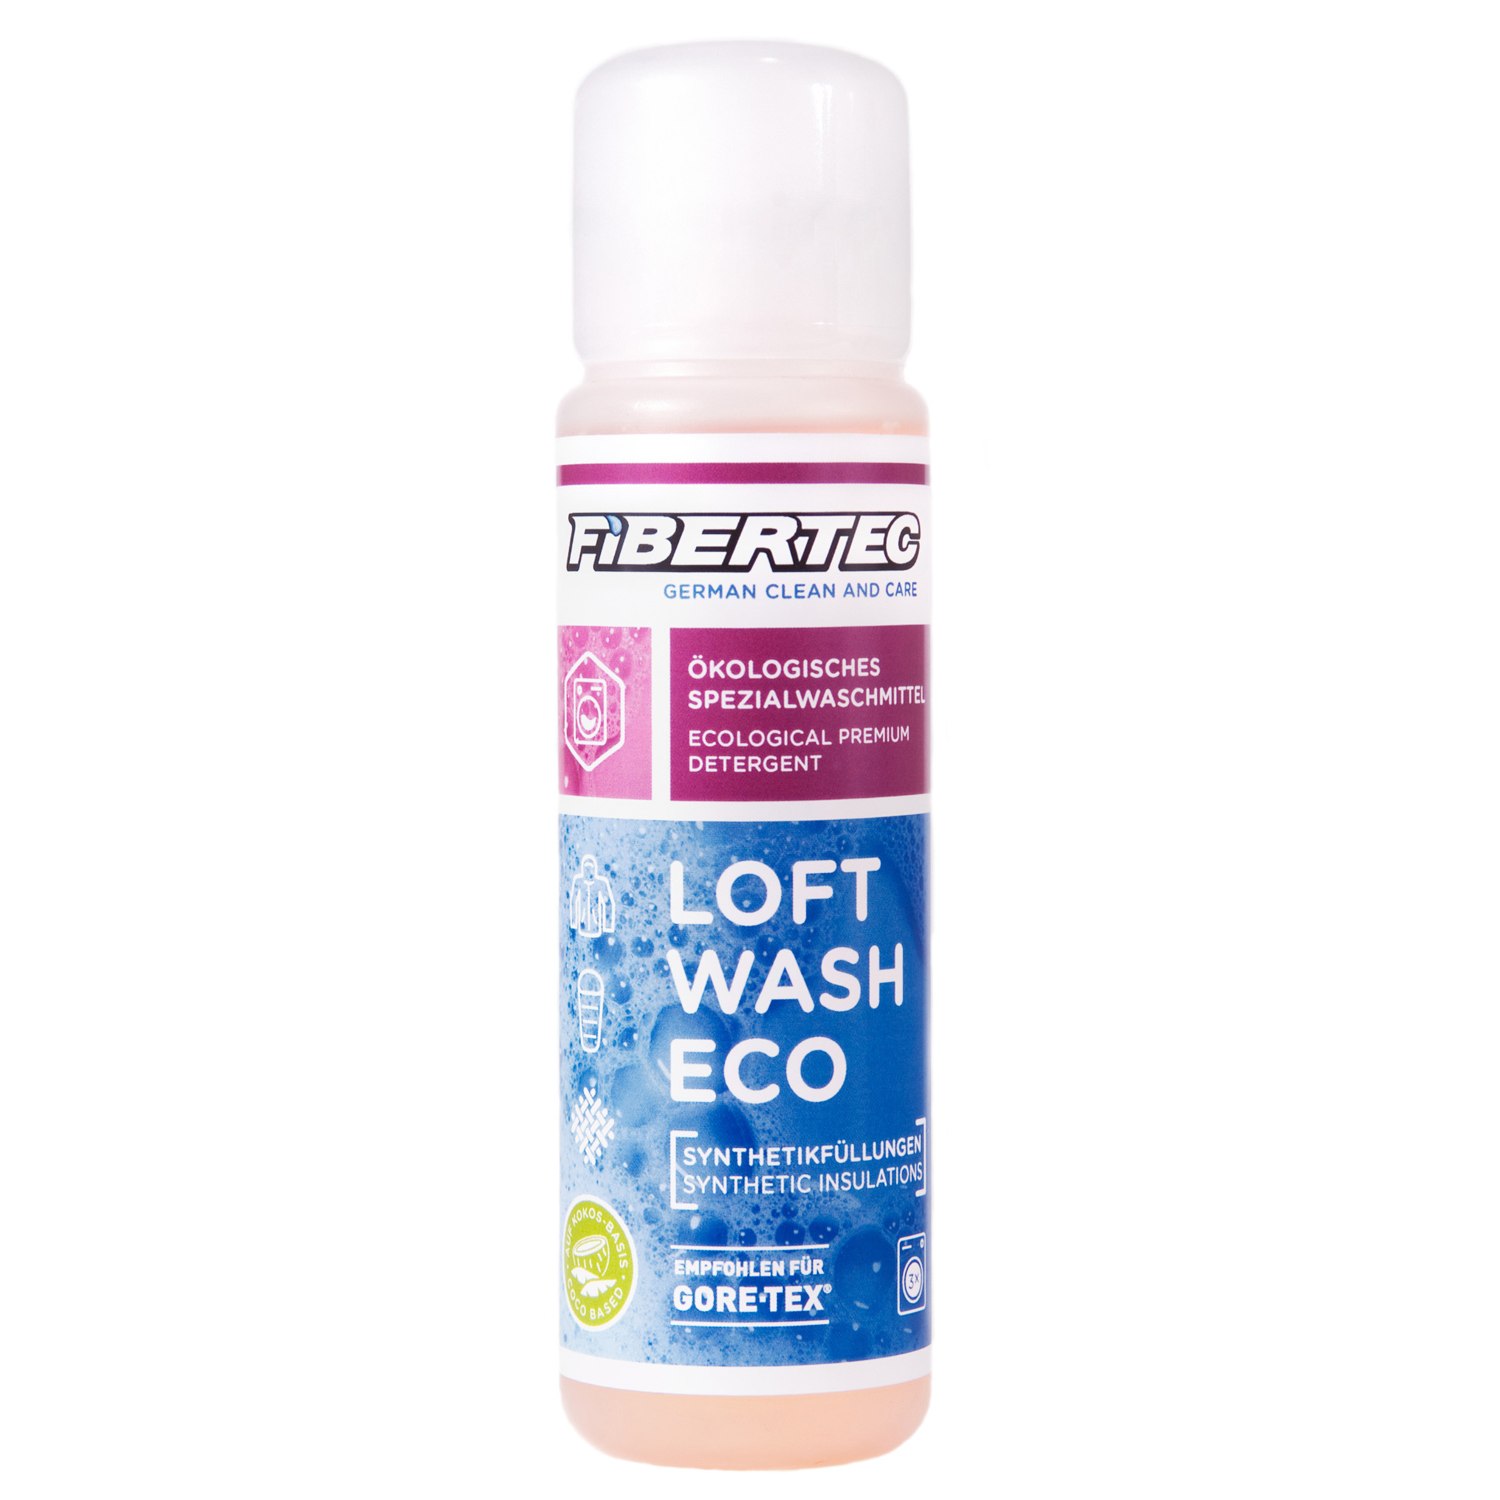 Immagine prodotto da Fibertec Loft Wash Eco Detergent for synthetic fillings 100 ml